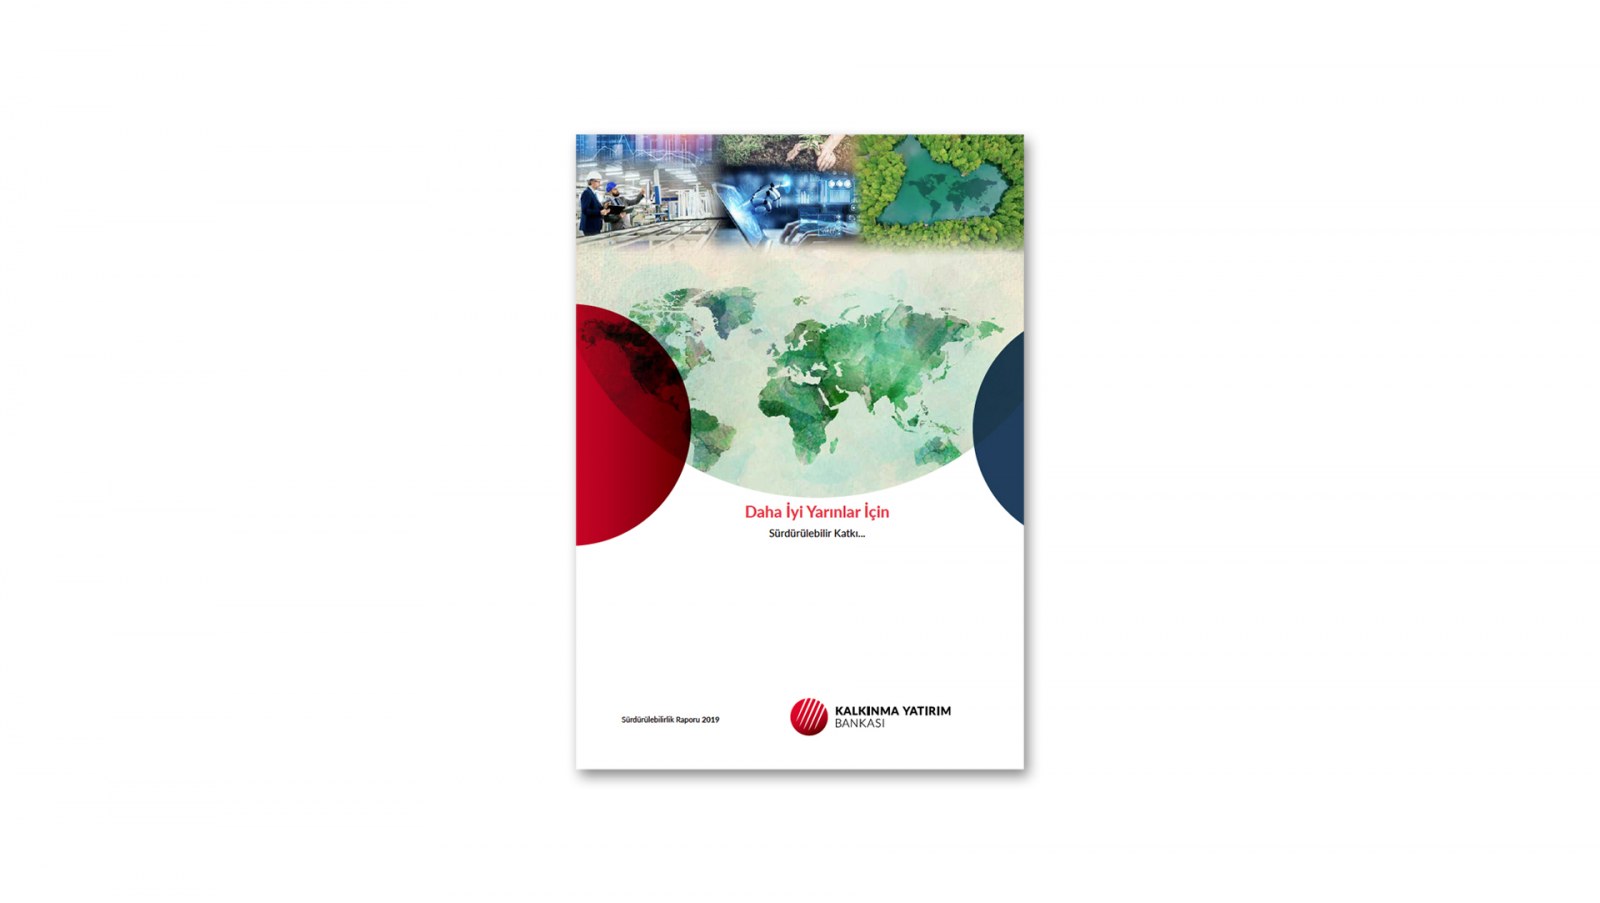 KALKINMA YATIRIM BANKASI / 2019 Sürdürülebilirlik Raporu / 2019 Sustainability Report